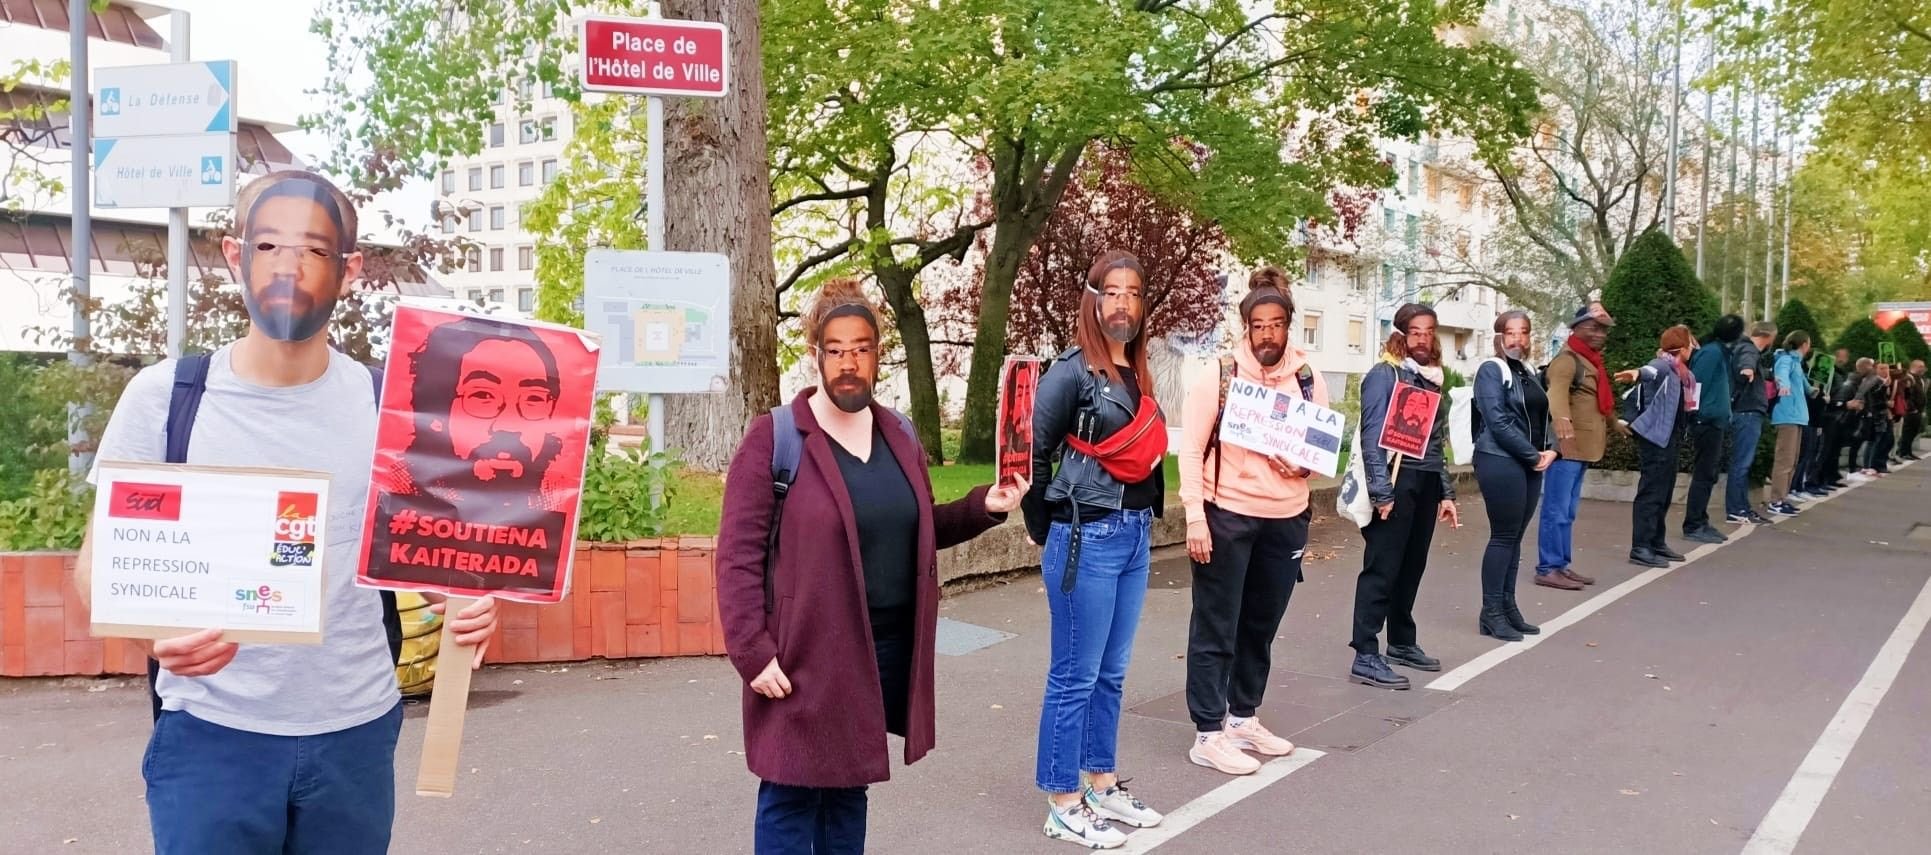 Nanterre (Hauts-de-Seine), le 23 septembre. 46 enseignants avaient manifesté devant le lycée Joliot-Curie pour protester contre la mutation forcée de leur collègue syndicaliste. DR